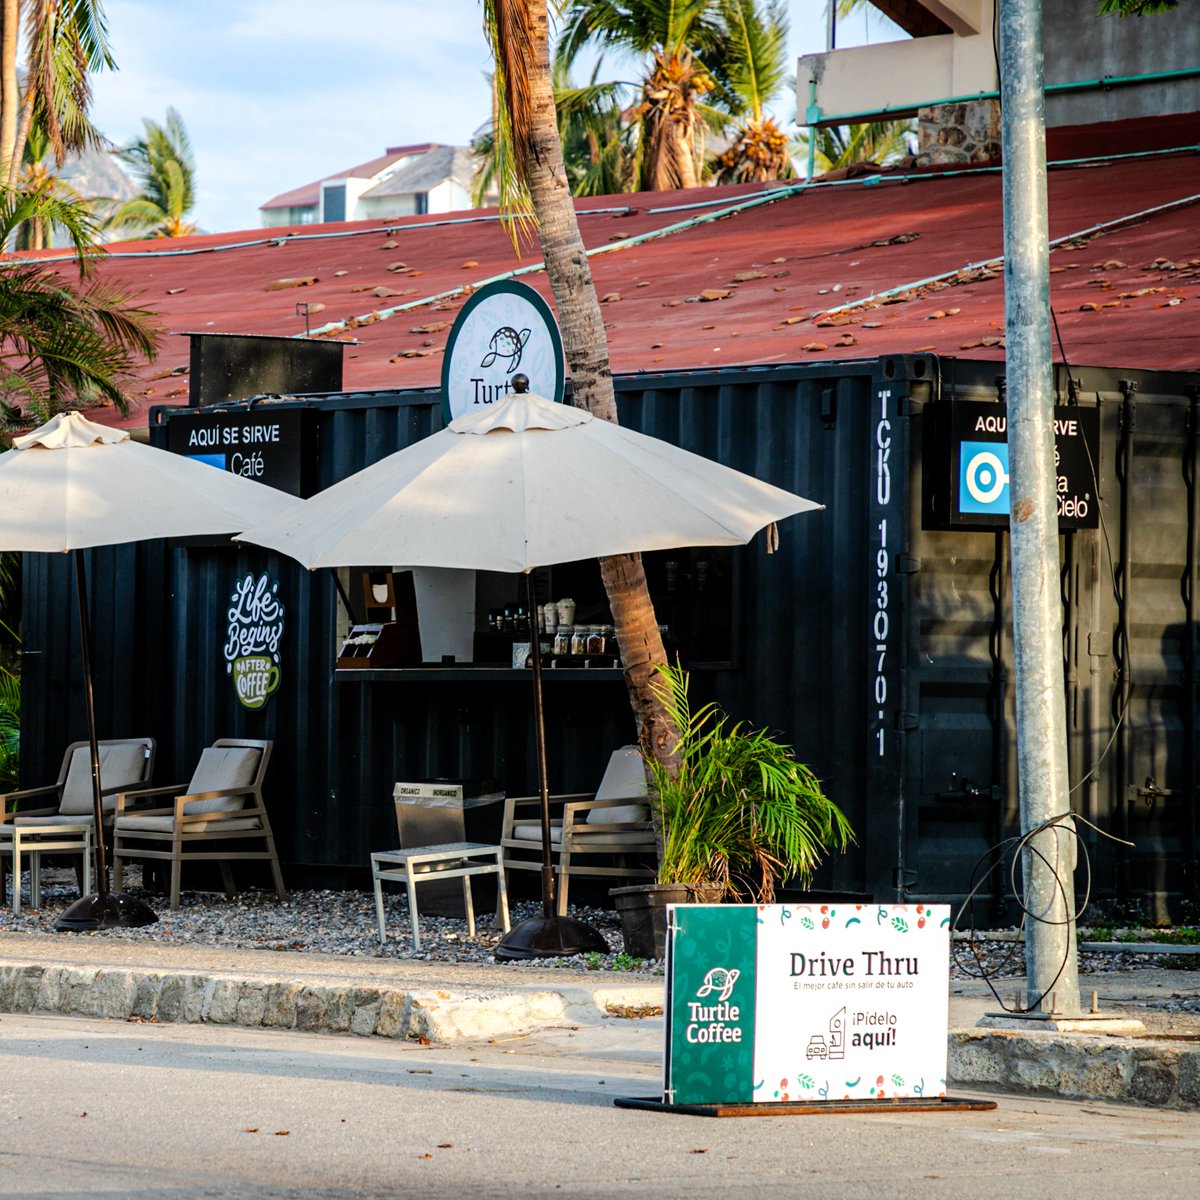 ¿Ya conoces Turtle Coffee en Costera de las Palmas? 🐢☕️

Café Punta del Cielo, Drive Thru, todos los días. 🚗

#coffee #RivieraDiamanteAcapulco #TurtleDunesCountryClub #golf #golflife #acapulco